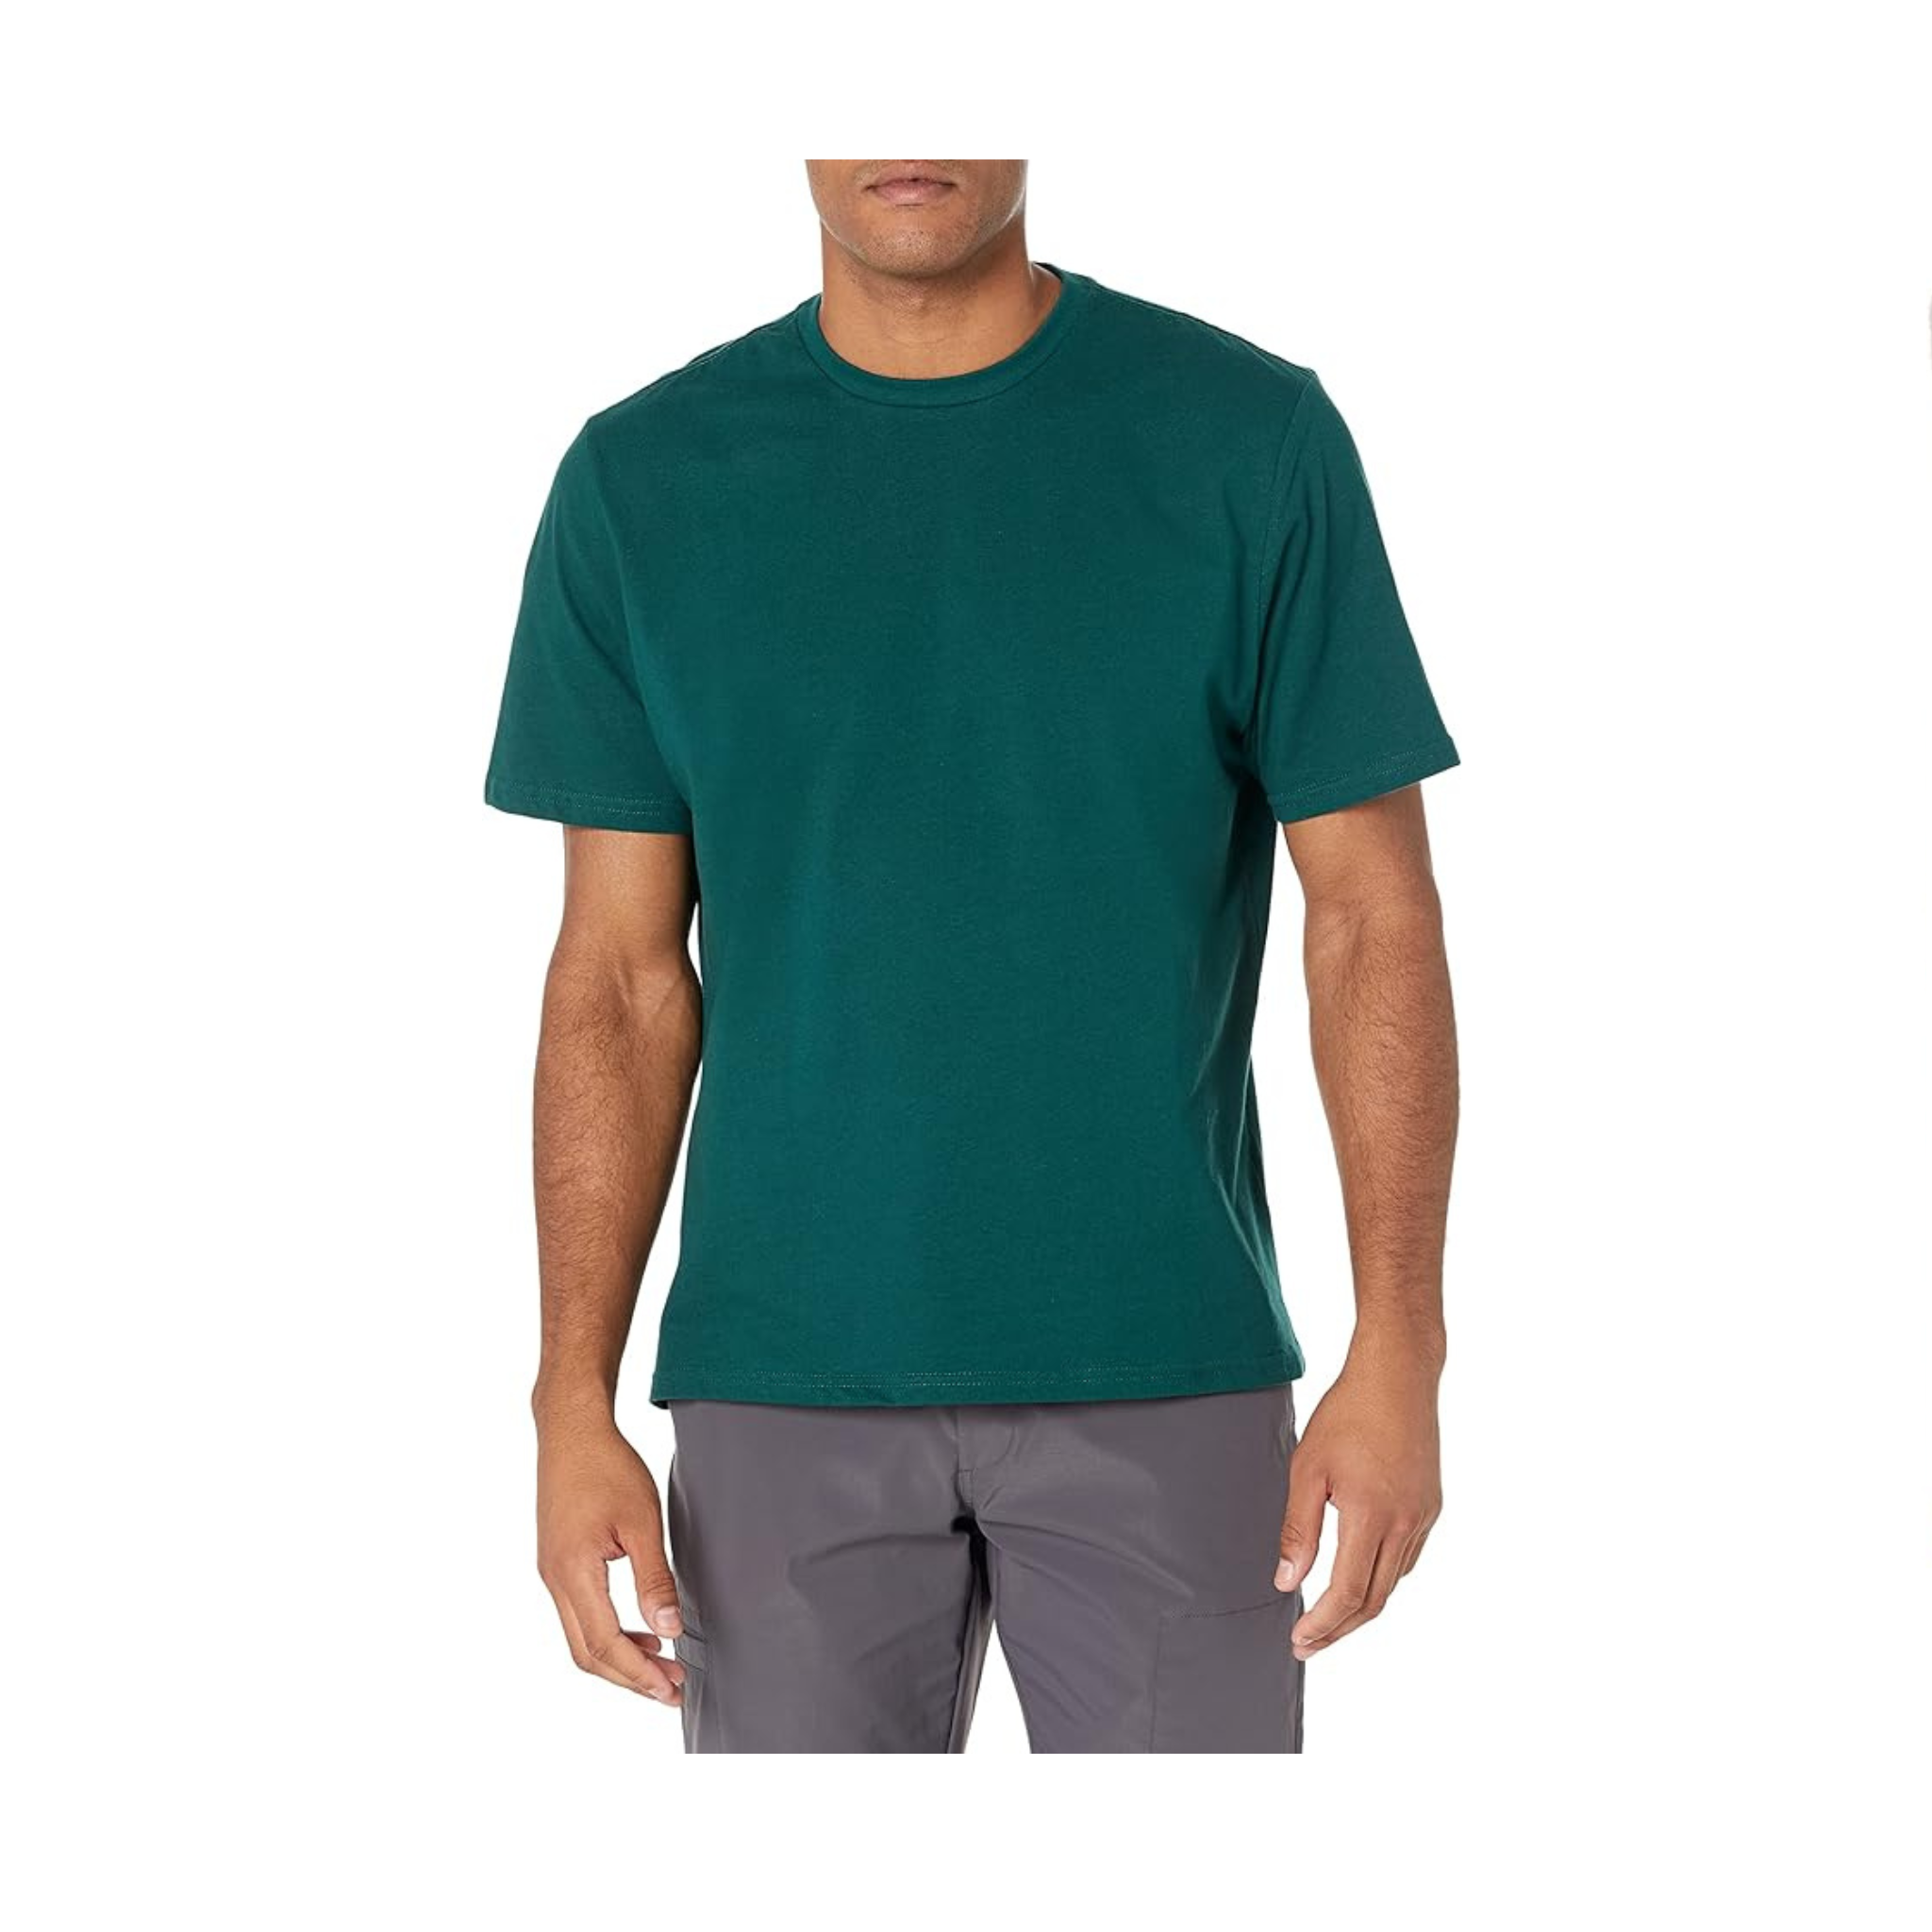 Paquete de 2 camisetas de manga corta y cuello redondo de ajuste regular para hombre Amazon Essentials